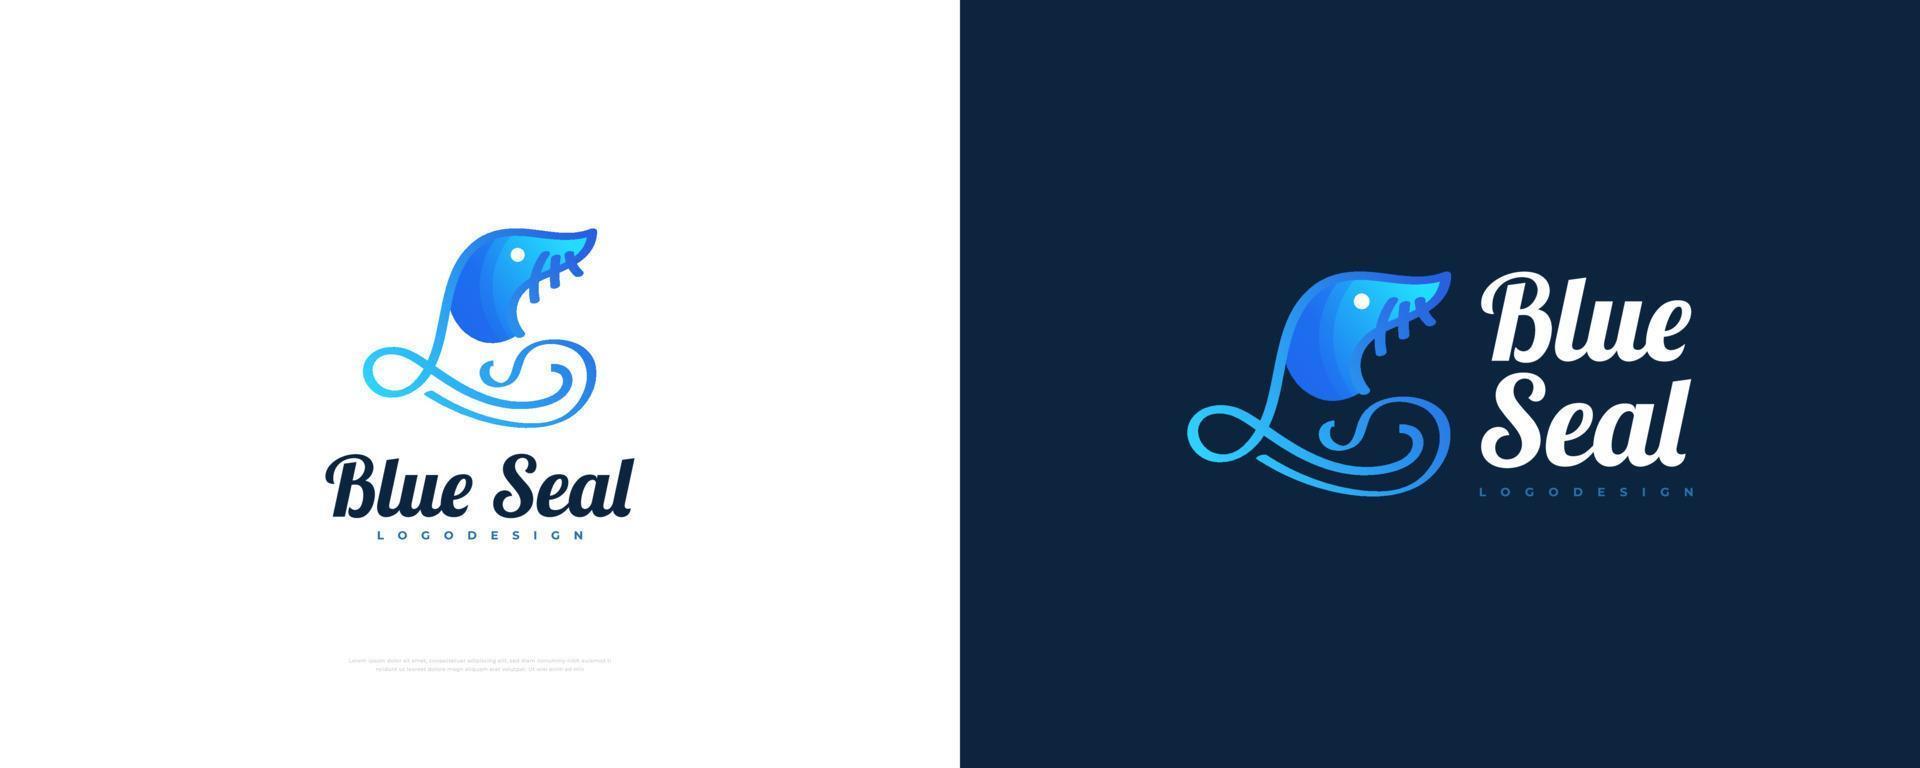 blu foca logo design. mare Leone logo nel moderno pendenza stile, adatto per, ristorante, zoo, o qualunque attività commerciale logo vettore